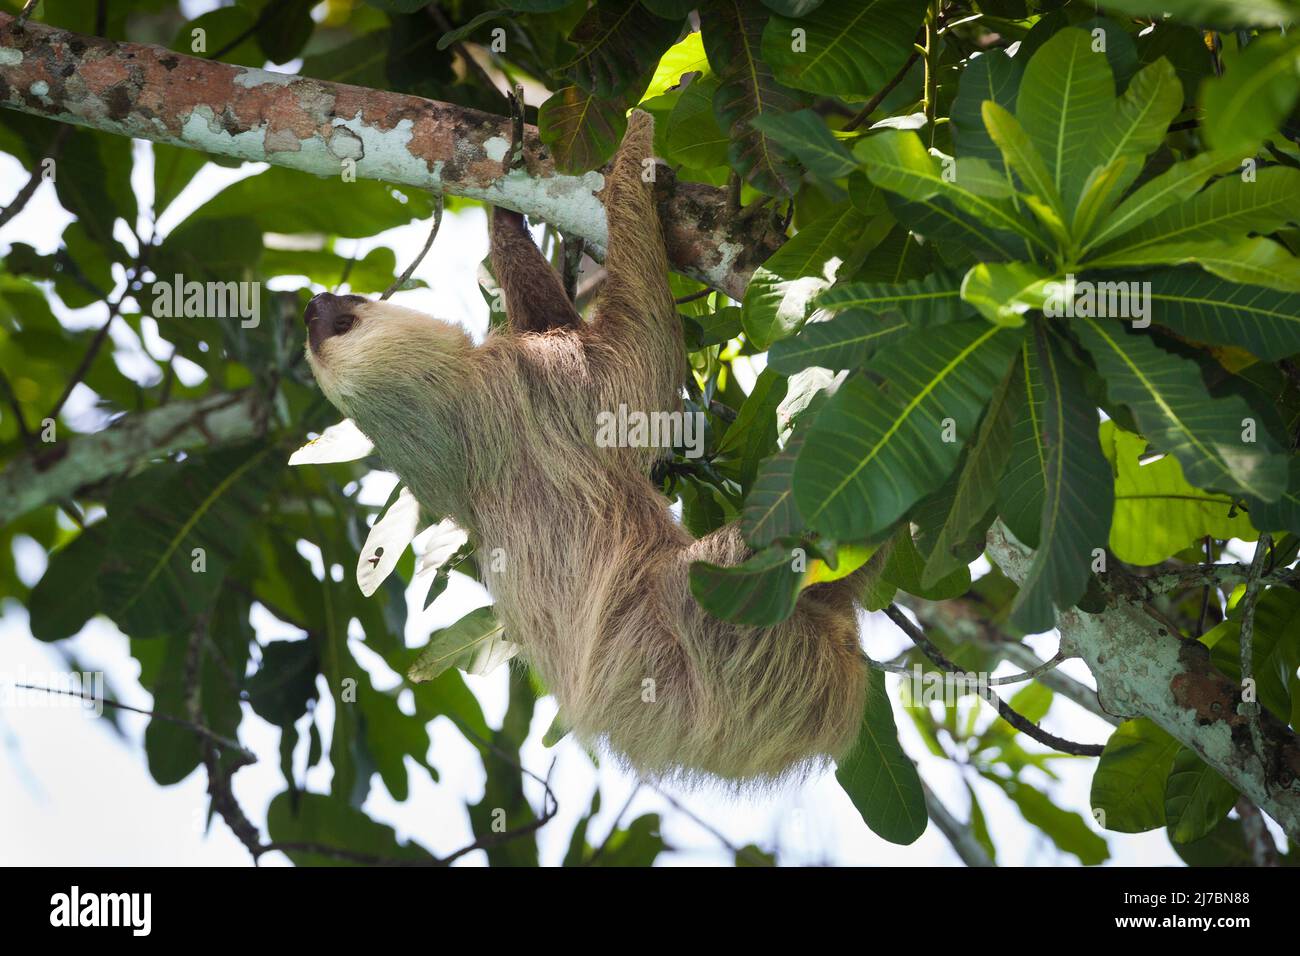 La vita selvatica di Panama con un solco a due punte, Choloepus hoffmanni, nella foresta pluviale del parco nazionale di Soberania, provincia di Colon, Repubblica di Panama. Foto Stock